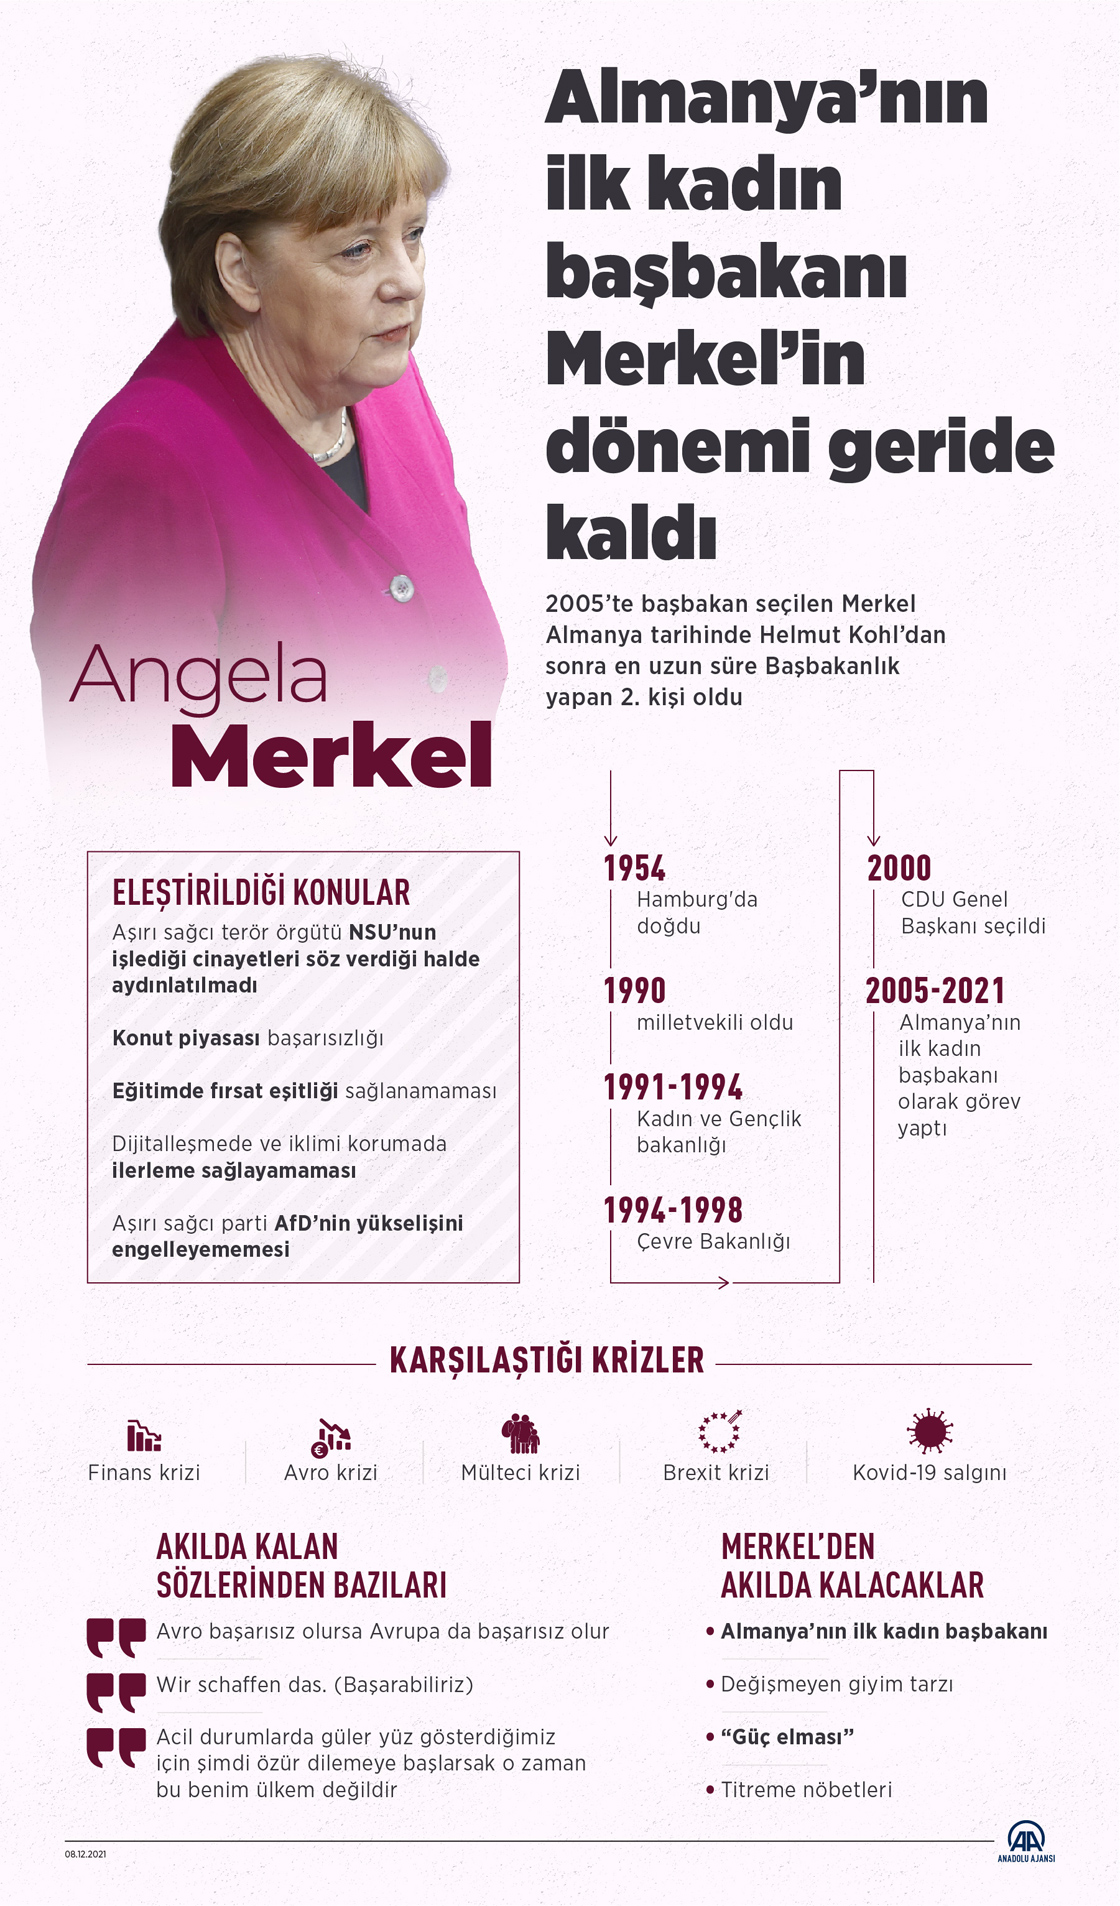 Almanya’nın ilk kadın başbakanı Merkel dönemi geride kalıyor